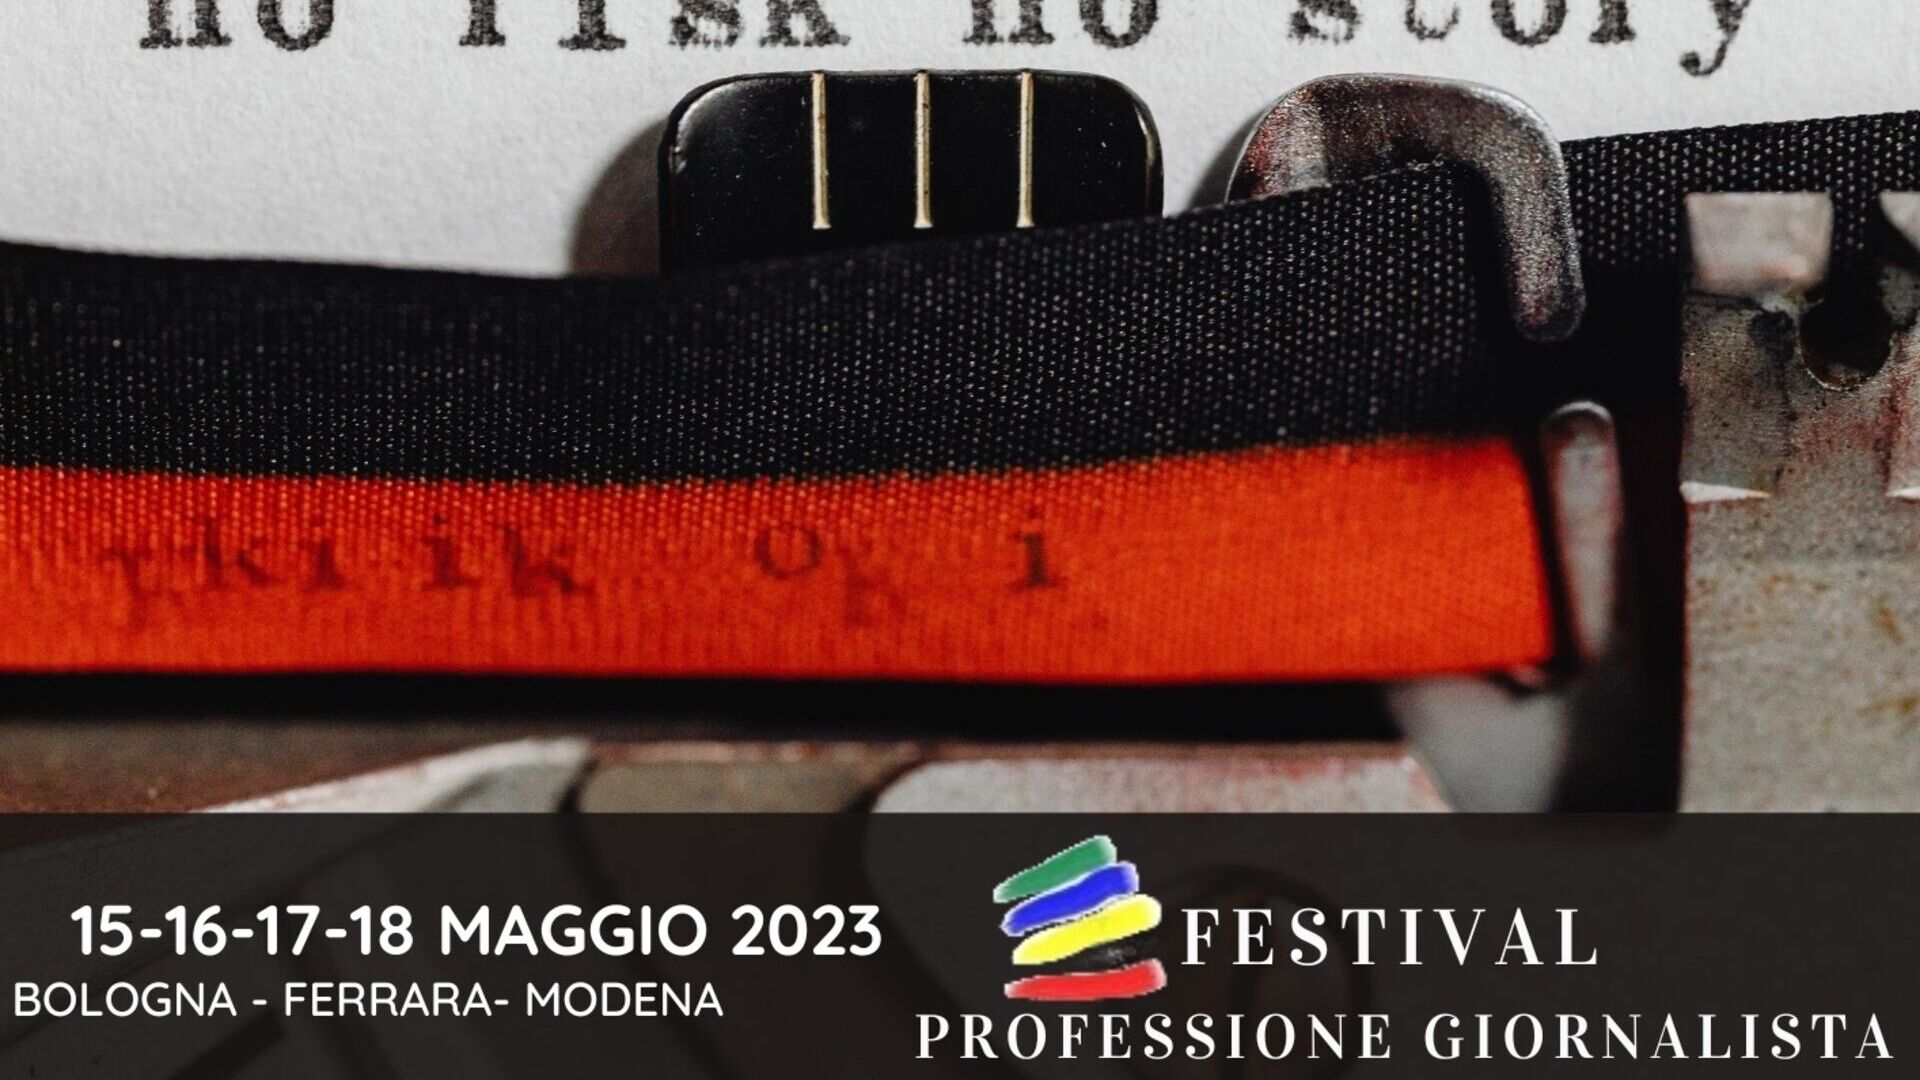 Profesija novinara: ključni vizual izdanja festivala "Professione Giornalista" 2023. (Bologna, Ferrara, Modena, 15.-16.-17.-18. svibnja)